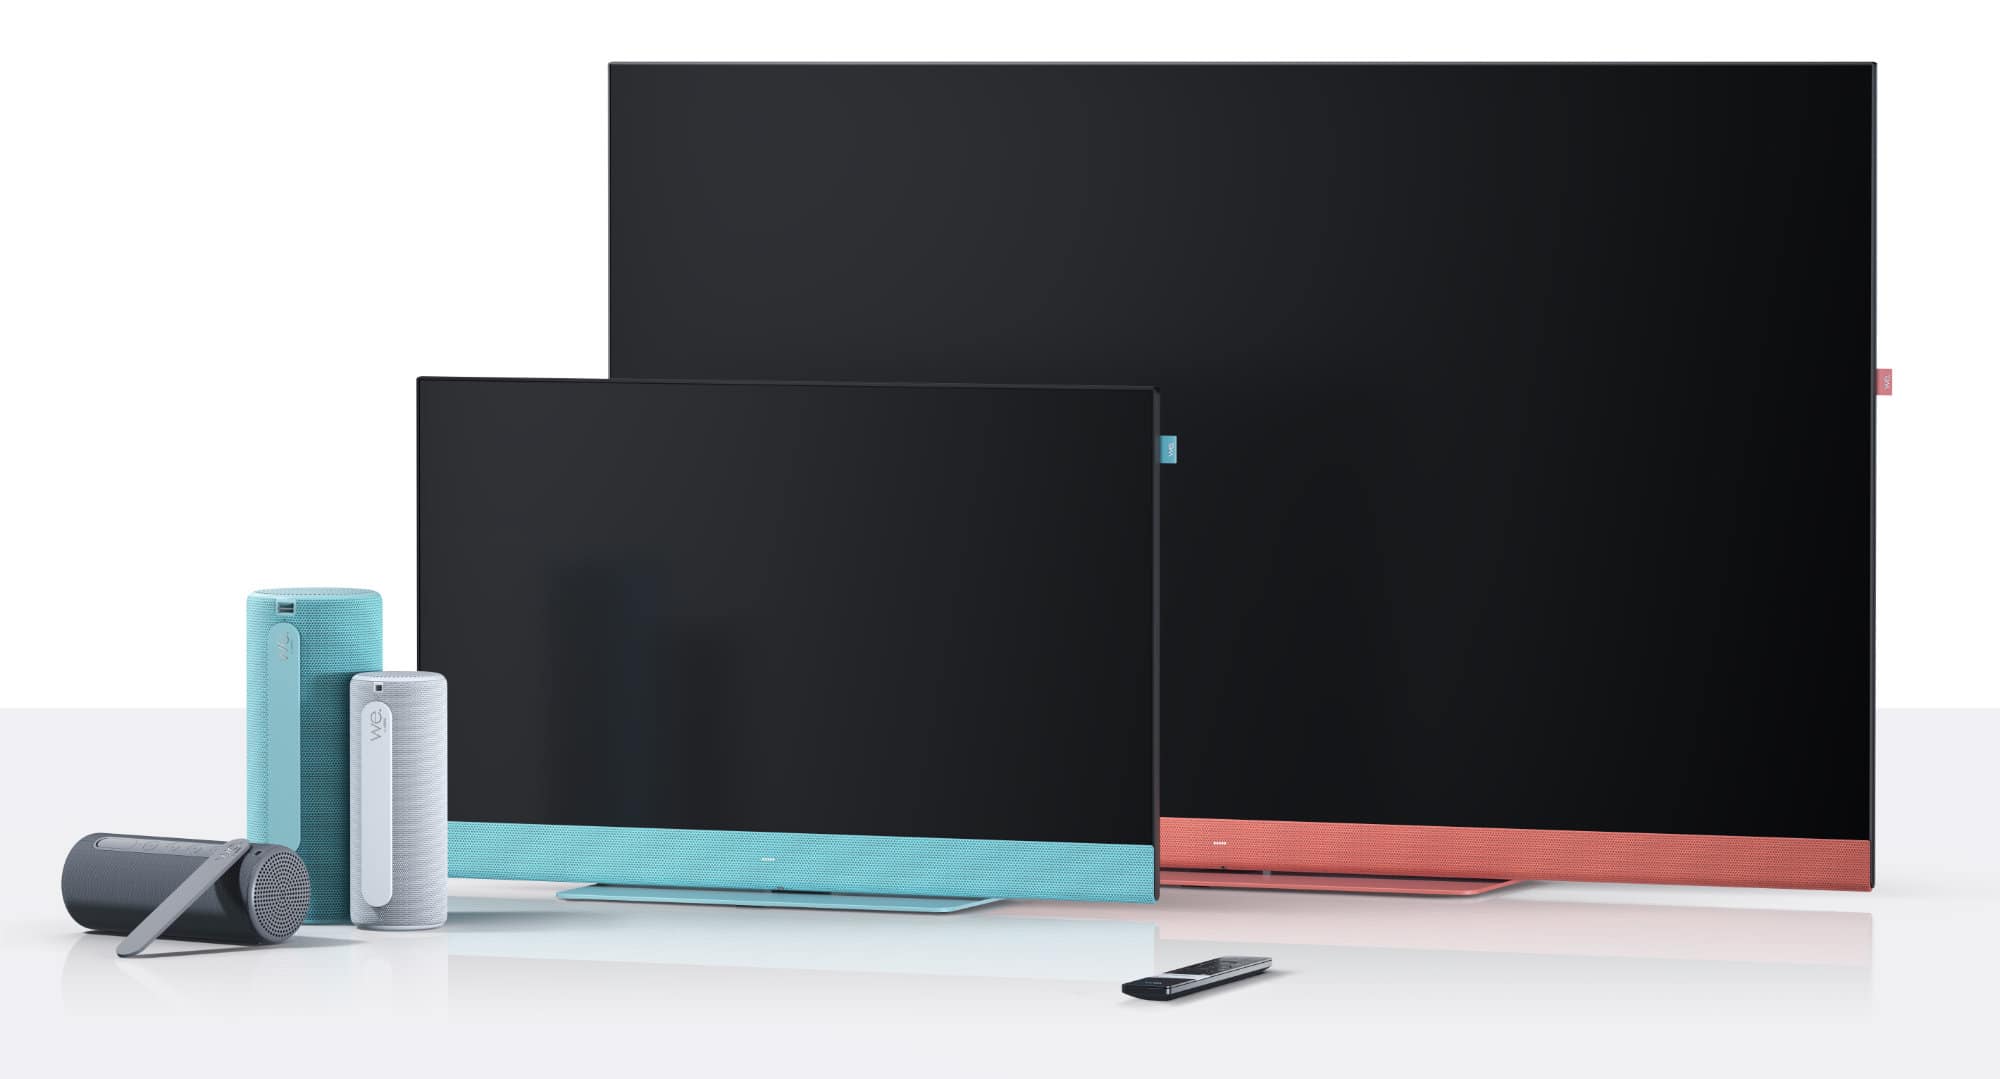 We. by Loewe bringt neue 4K-TVs und Bluetooth-Lautsprecher - 4K Filme